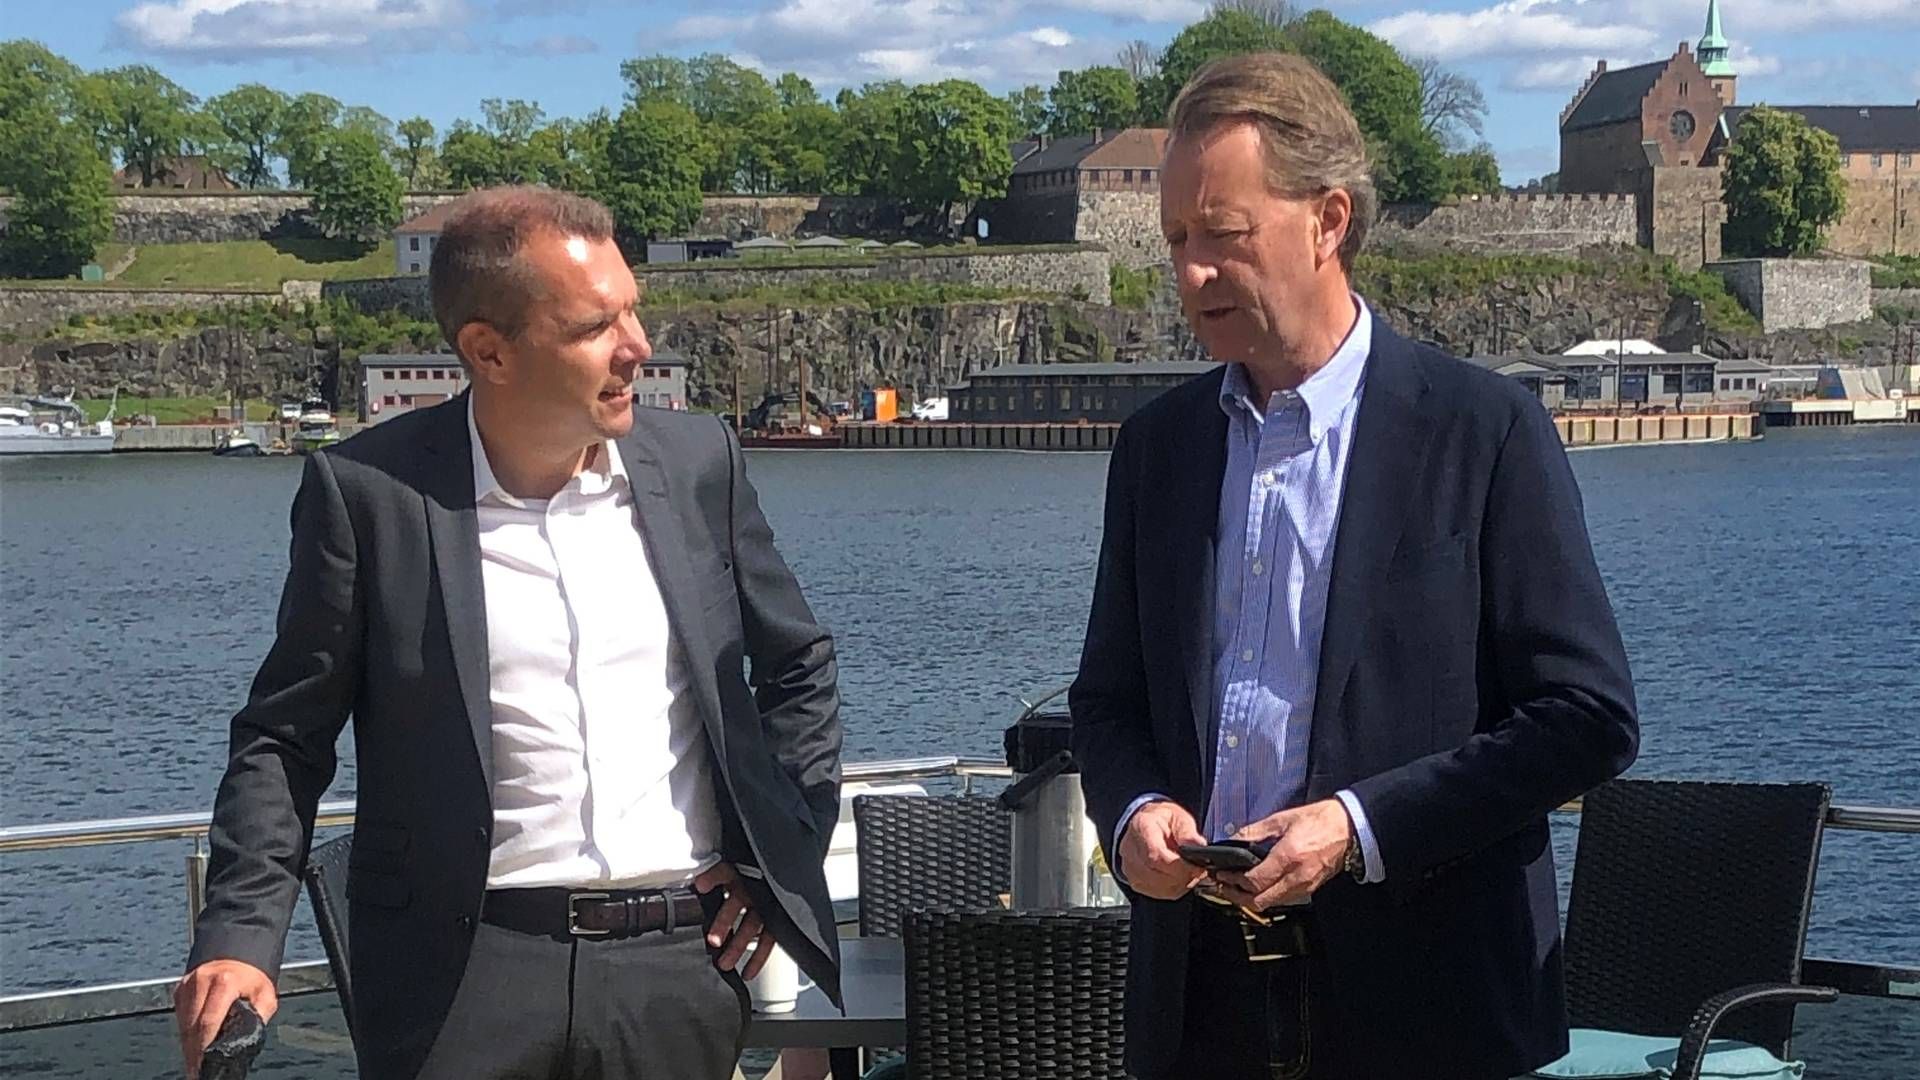 CEO Steffen Syvertsen (L) joined by investor Bjørn Rune Gjelsten during presentation of Agder Energi's plans to build a battery factory. | Photo: PR / Agder Energi